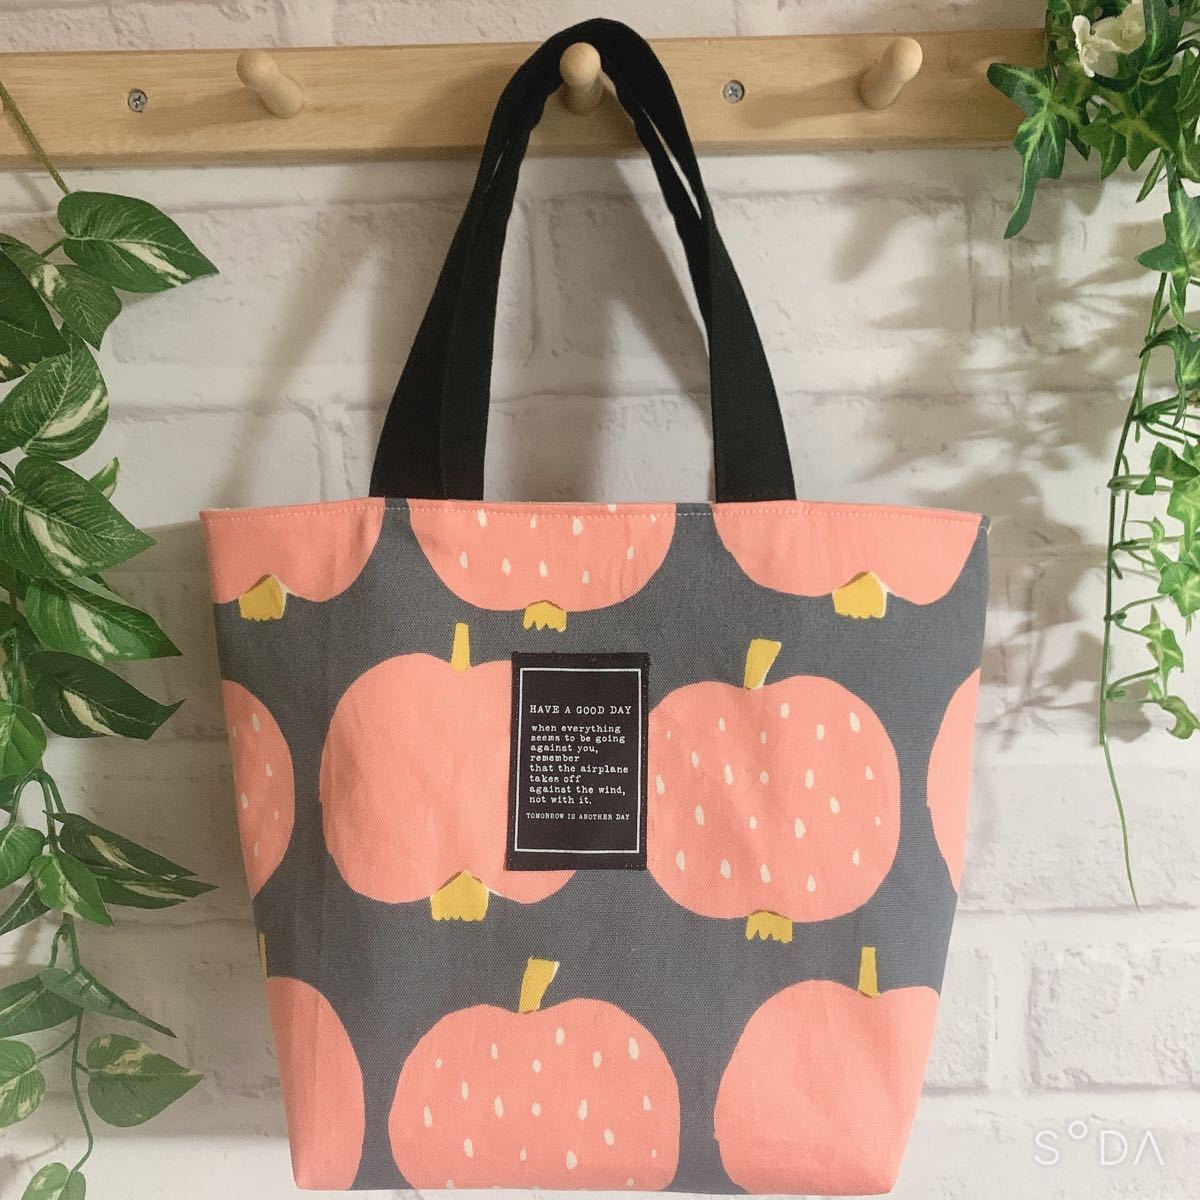 ハンドメイド　ミニトートバッグ　りんご柄　フルーツ柄　北欧風　グレー＆ピンク色　お散歩バッグ